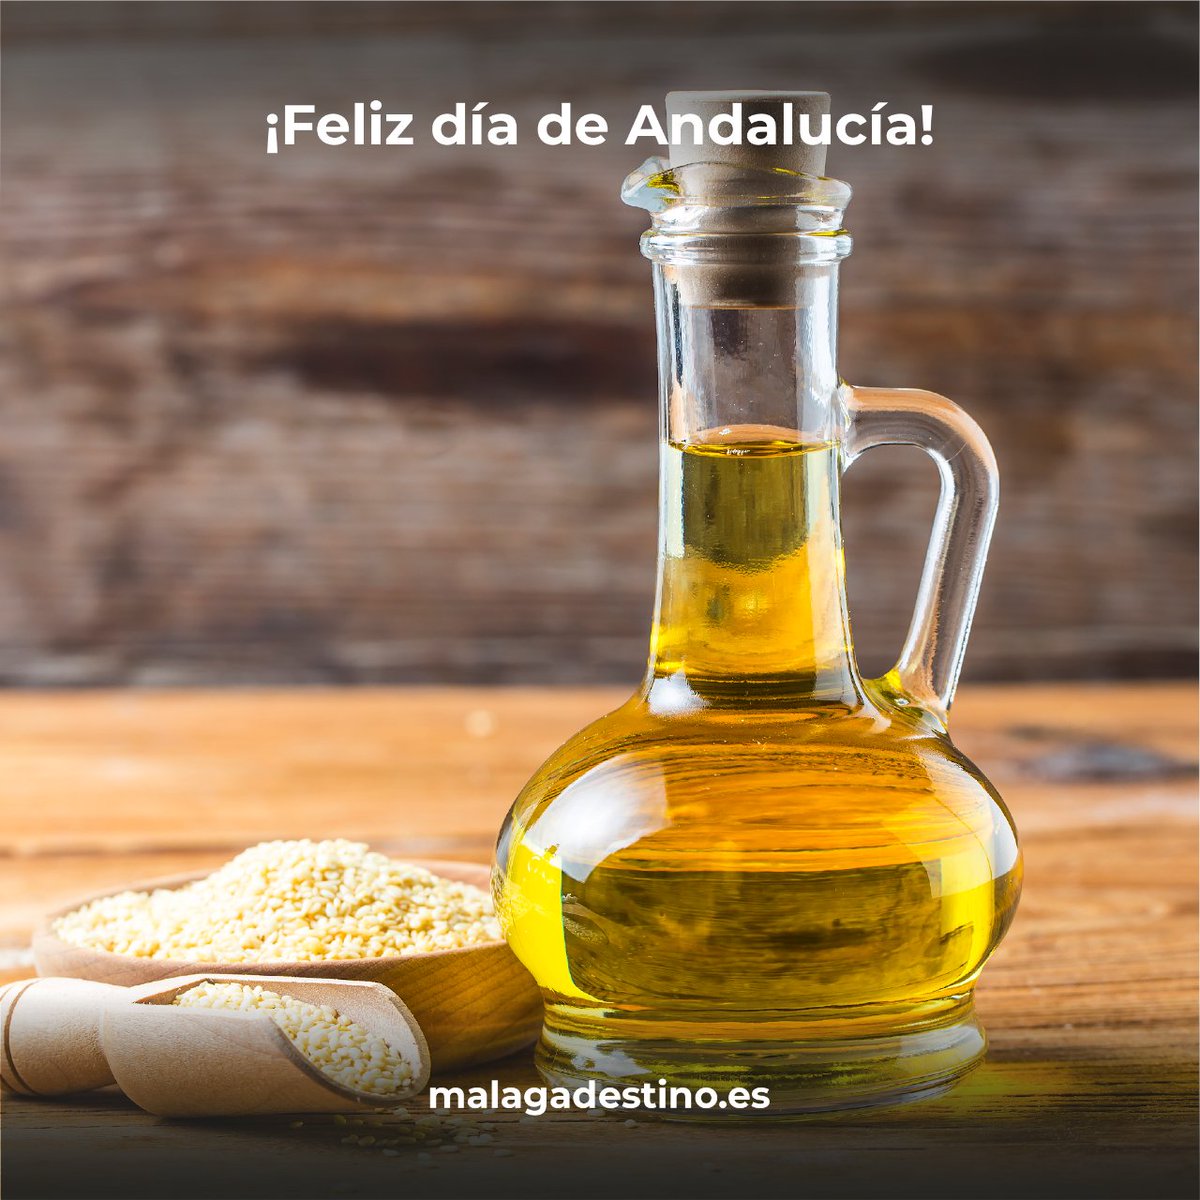 ¡Feliz día de Andalucía! 💚🤍💚
Hoy es un día para presumir de nuestra tierra, de nuestra gente, y como no, de los auténticos sabores andaluces.🥰
#diadeandalucia #malaga #malagadestino #andalucia #productosdemalaga #productosartesanales